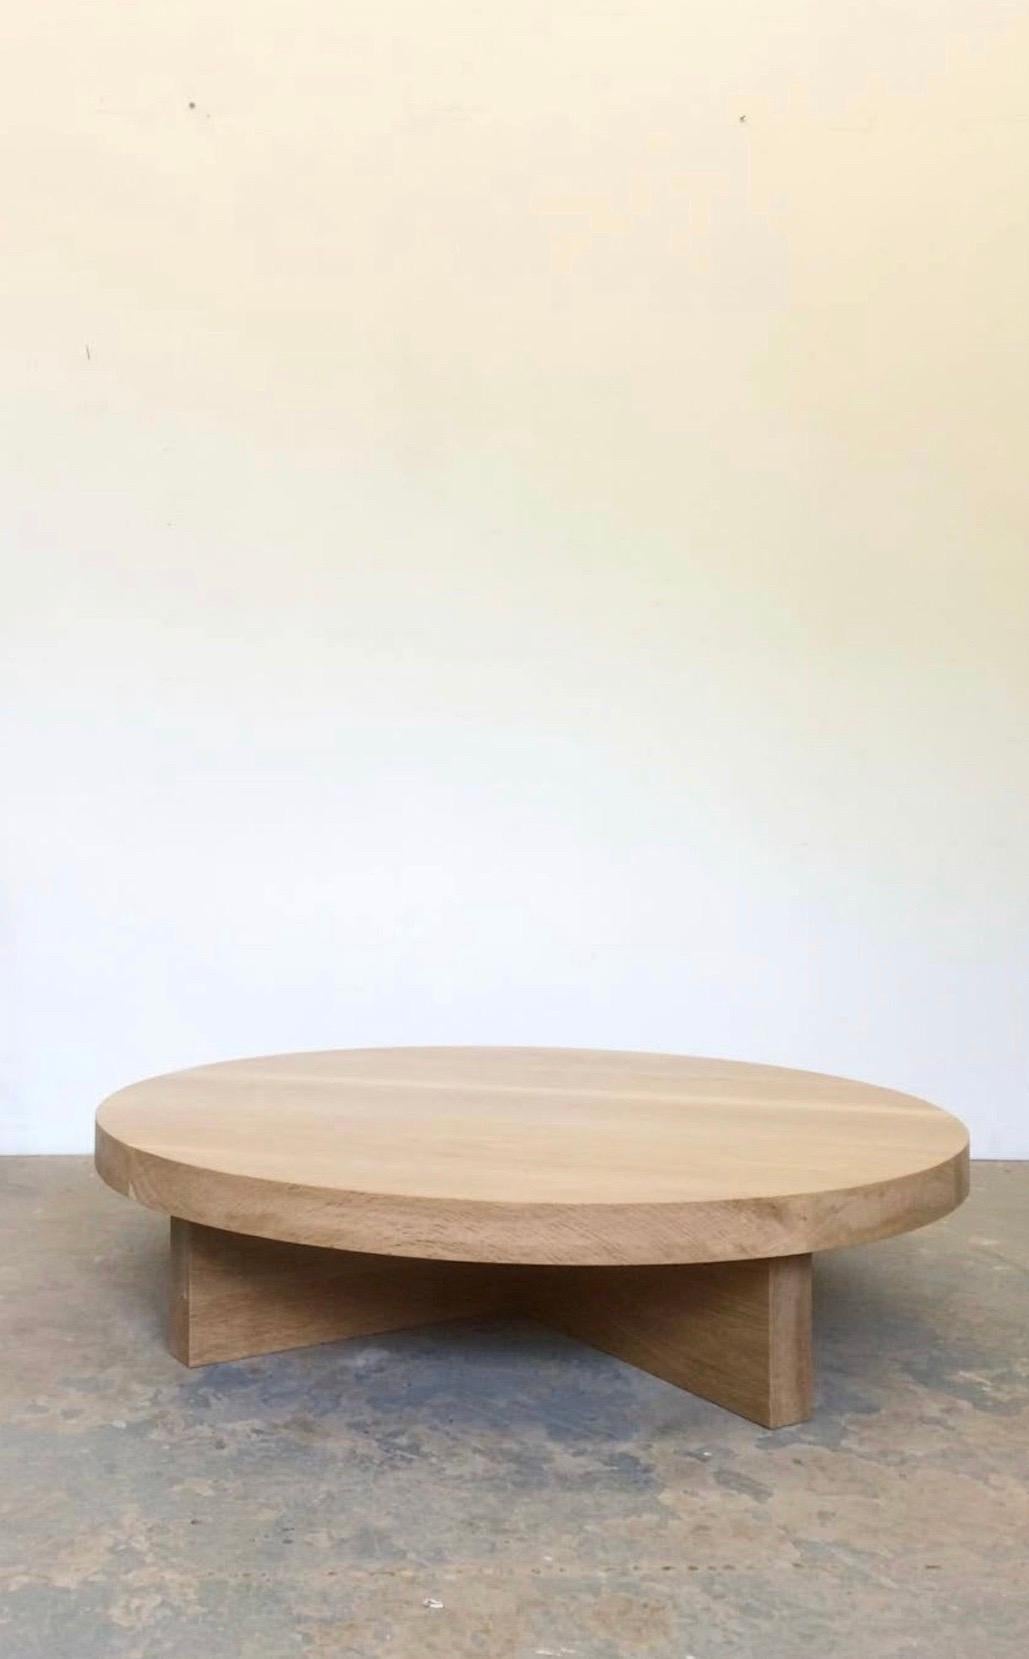 Cette table basse en bois massif est fabriquée à la main dans un bois qui conserve son caractère naturel, portant à l'occasion un nœud, une entaille ou une fissure, aucune table n'étant exactement identique à une autre.